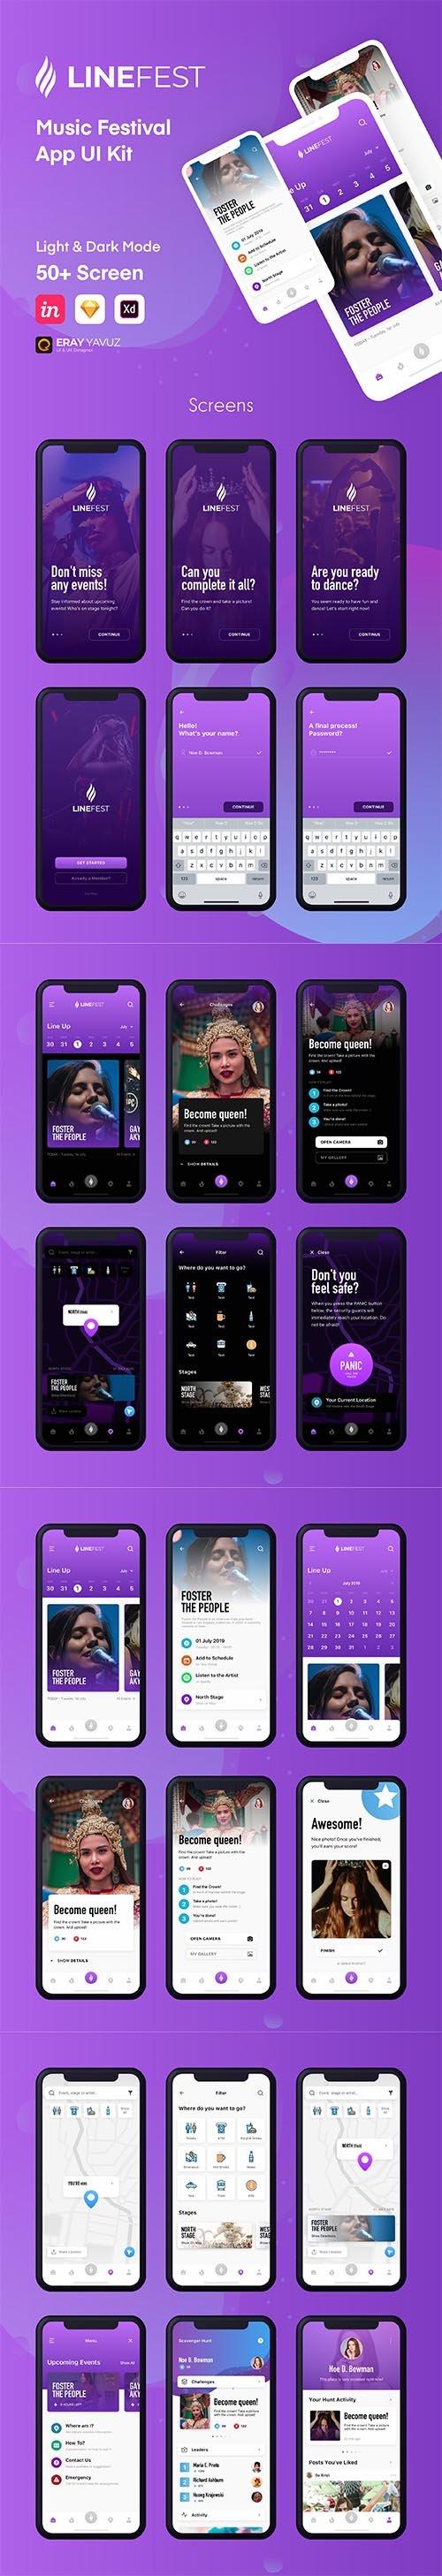 LineFest - Music Festival Mobile App UI Kit  - UI8